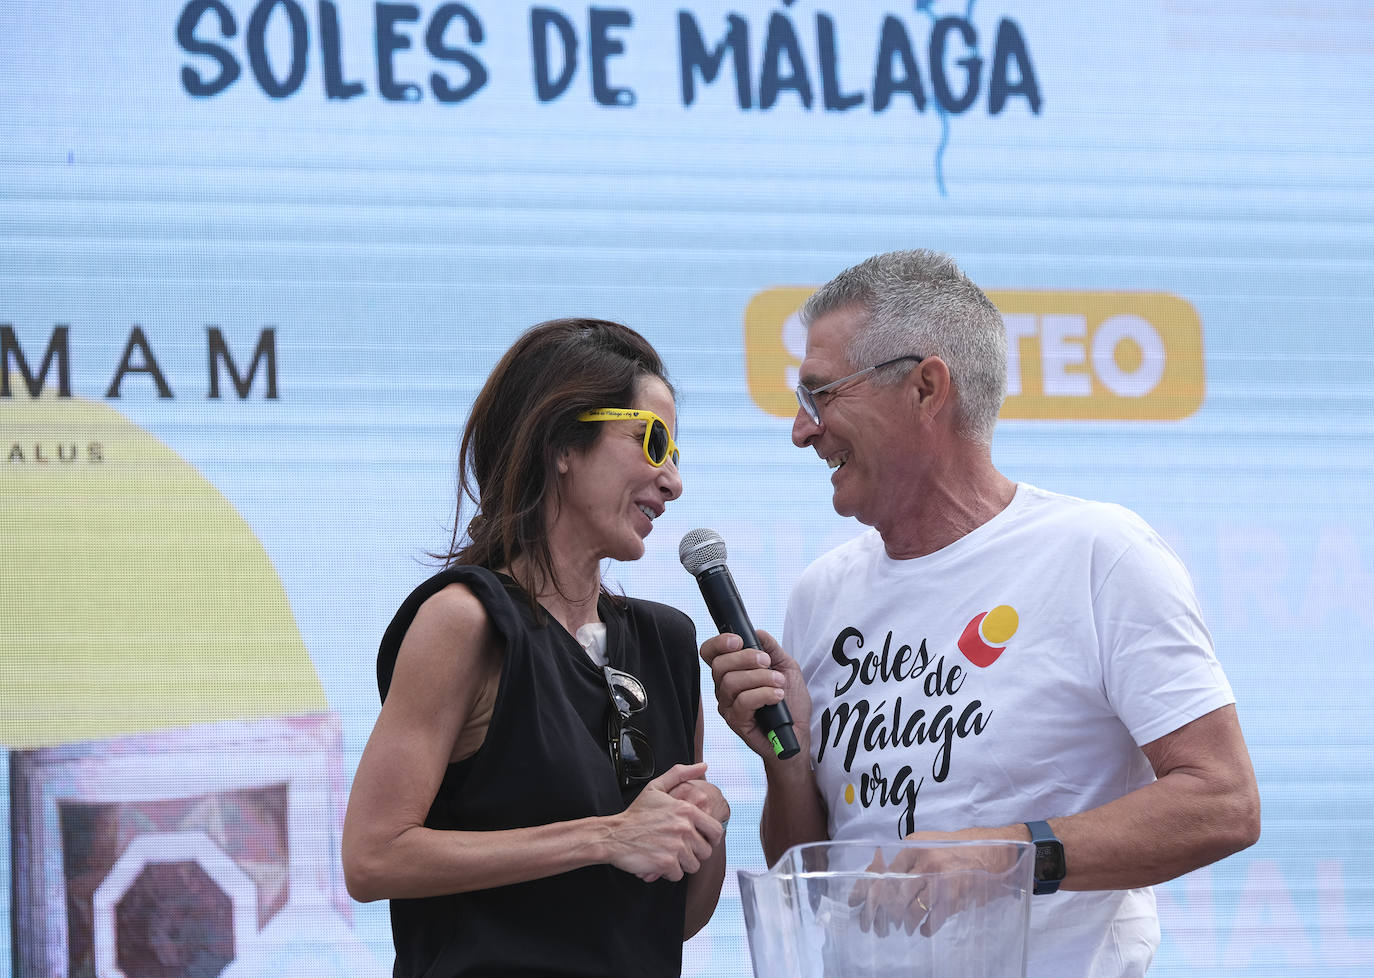 Los Soles de Málaga, la fiesta solidaria de Fundación El Pimpi